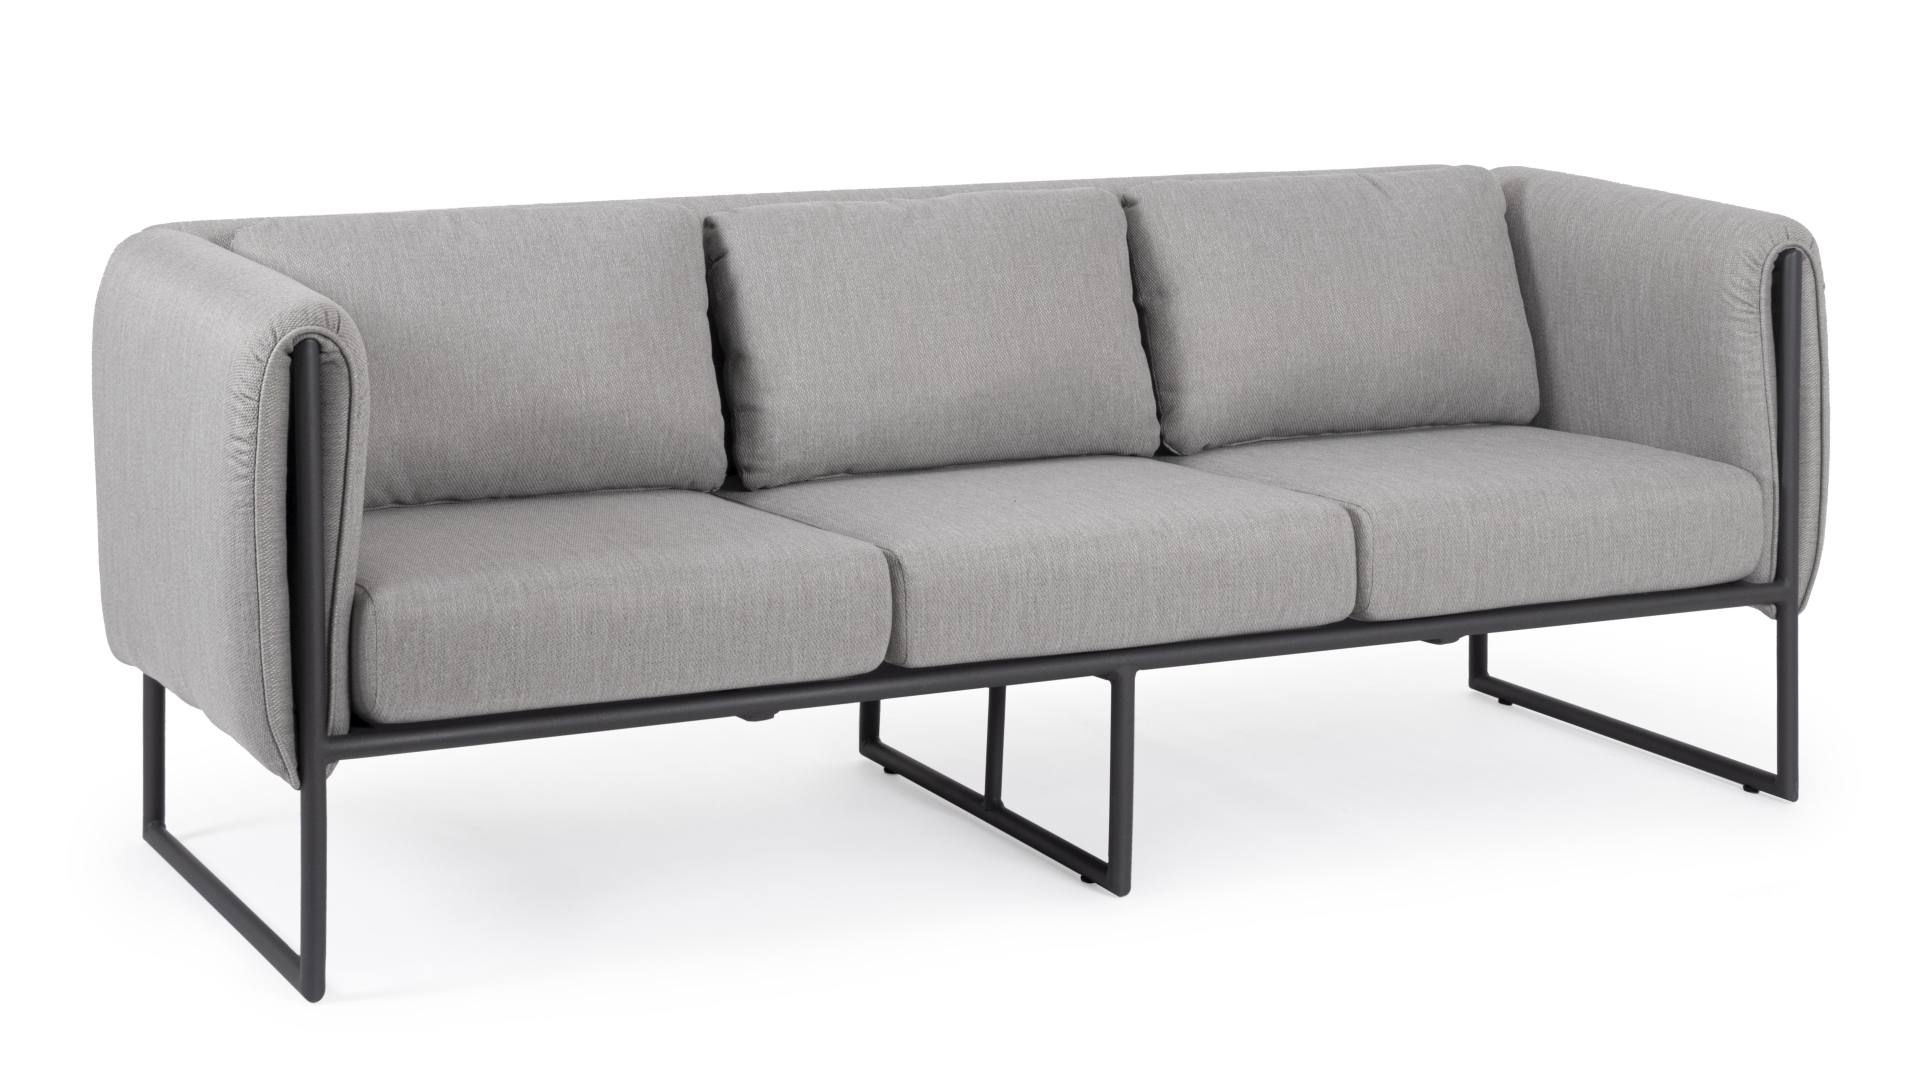 Das Gartensofa Pixel überzeugt mit seinem modernen Design. Gefertigt wurde es aus Olefin-Stoff, welcher einen grauen Farbton besitzt. Das Gestell ist aus Aluminium und hat eine schwarze Farbe. Das Sofa verfügt über eine Sitzhöhe von 42 cm und ist für den 